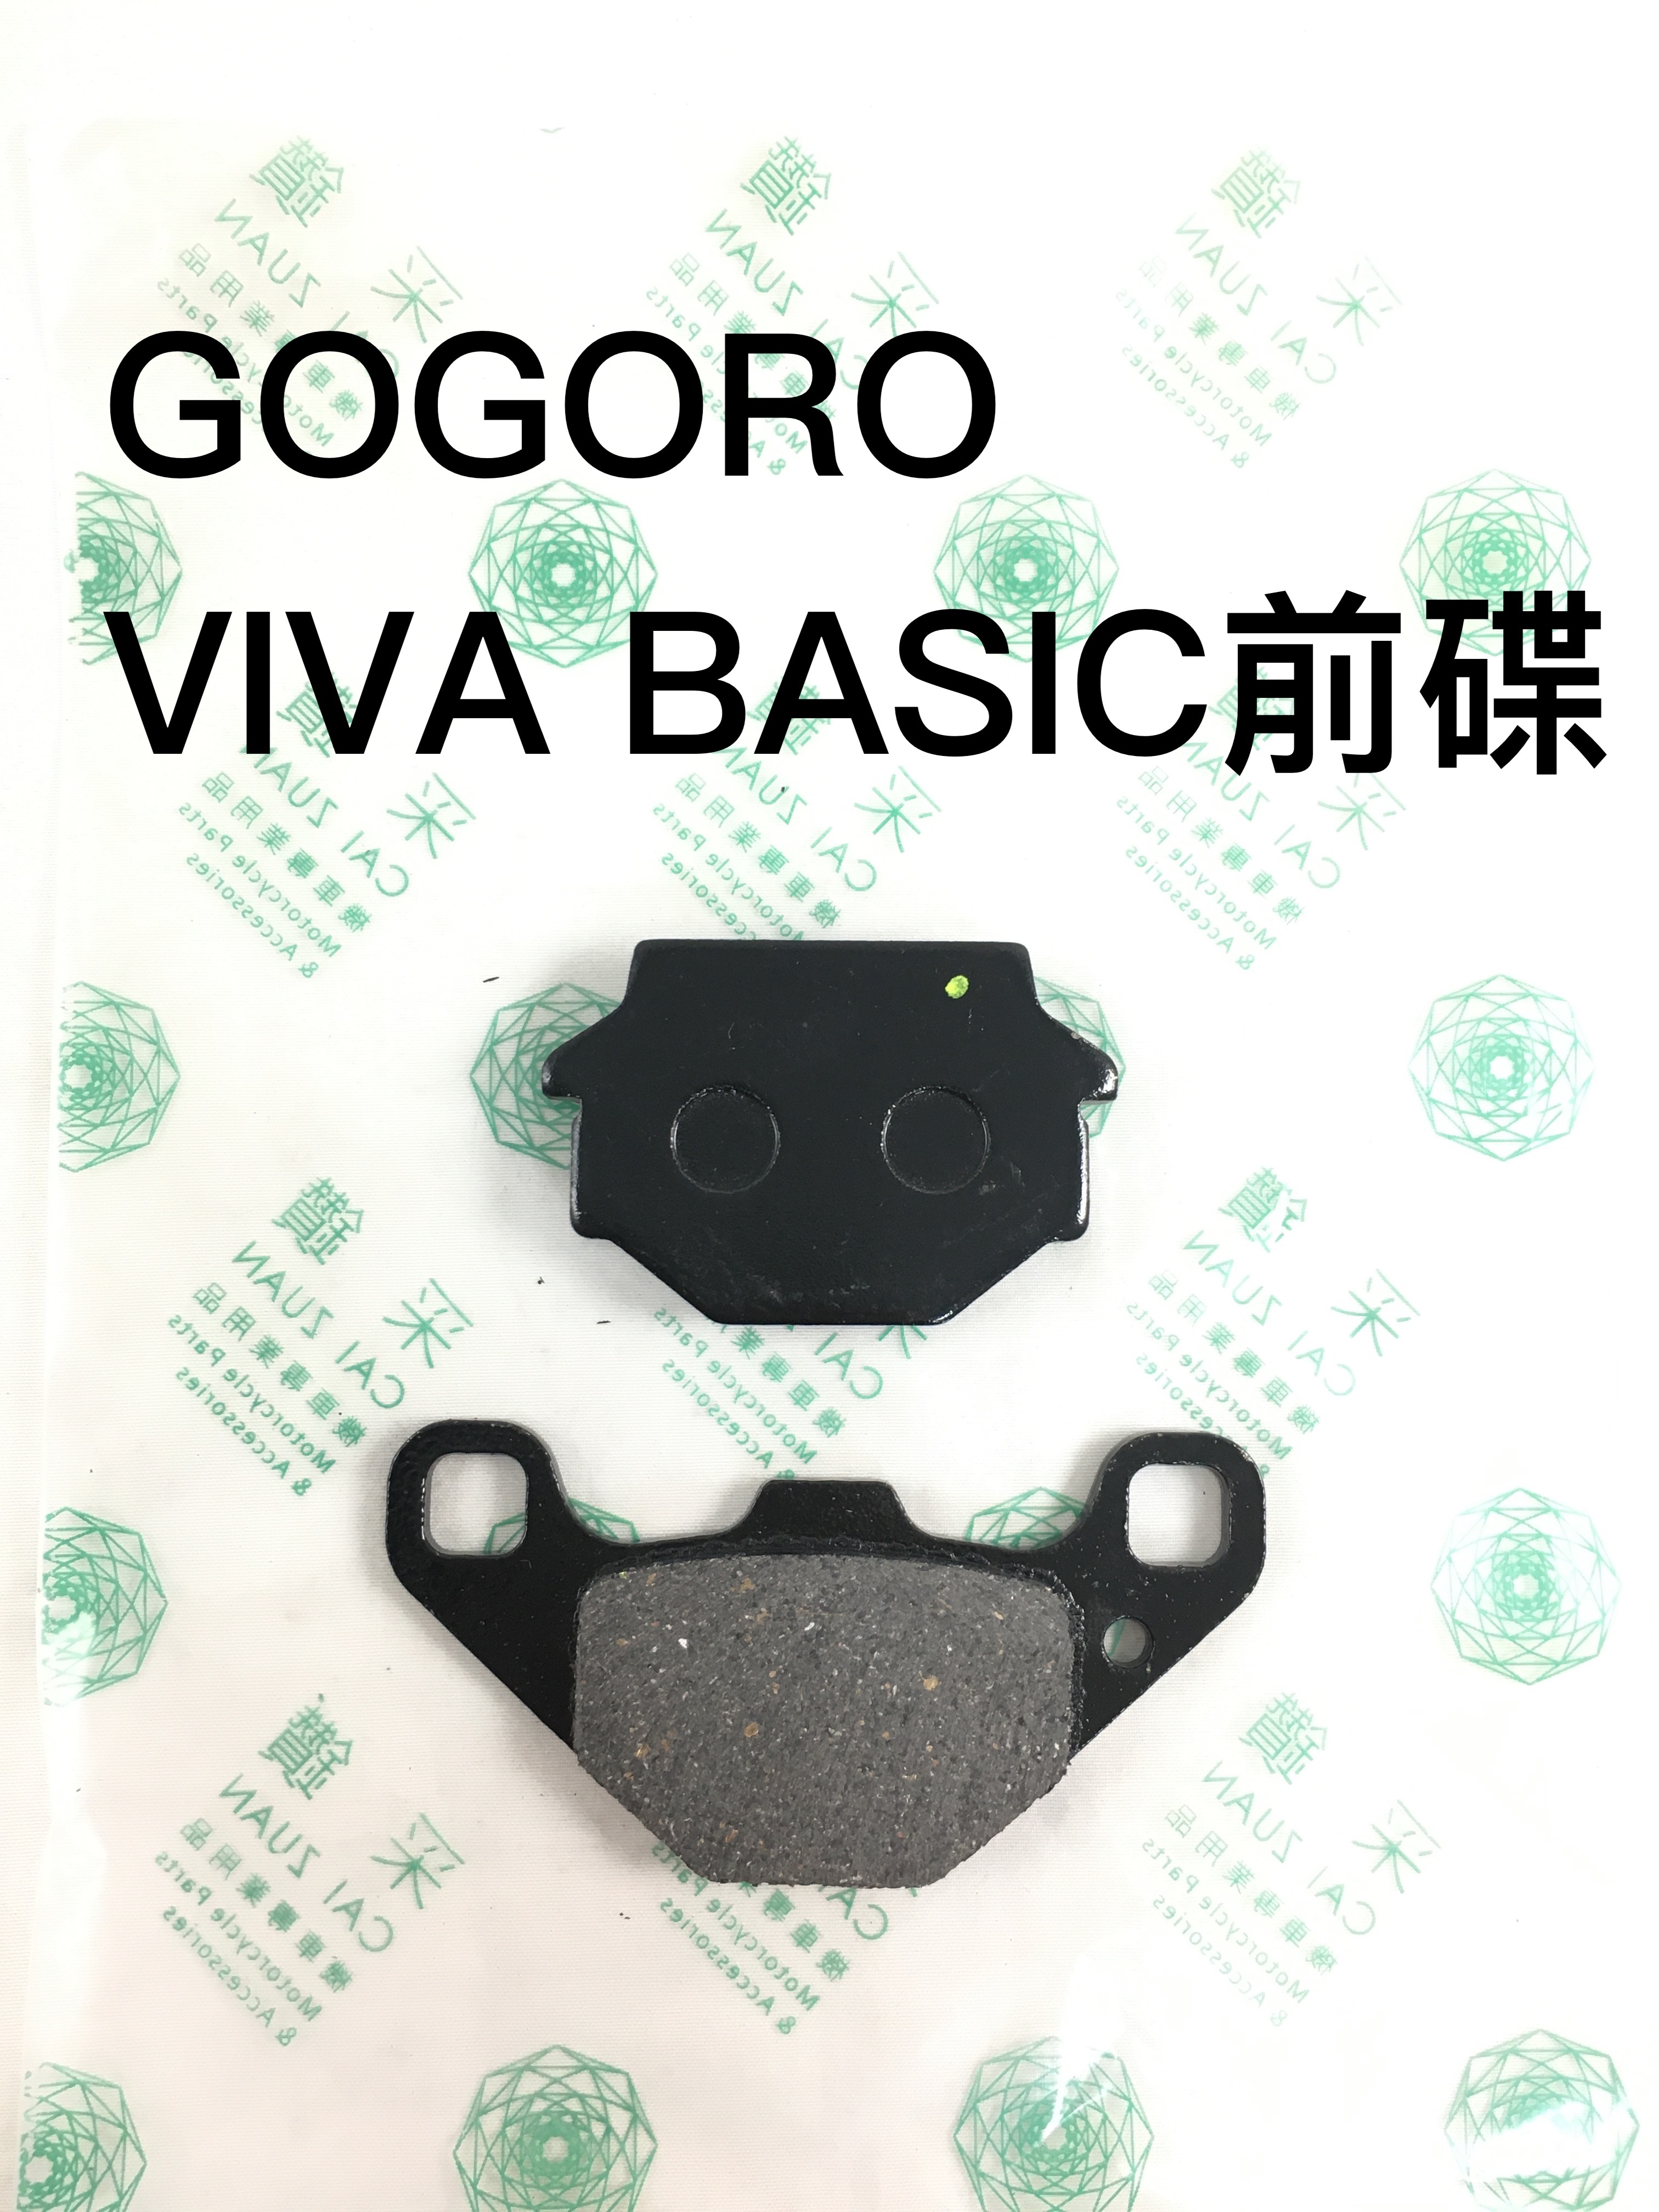 台中采鑽公司貨 GOGORO VIVA BASIC前碟煞煞車皮 台灣製造 ANDREW 安德魯